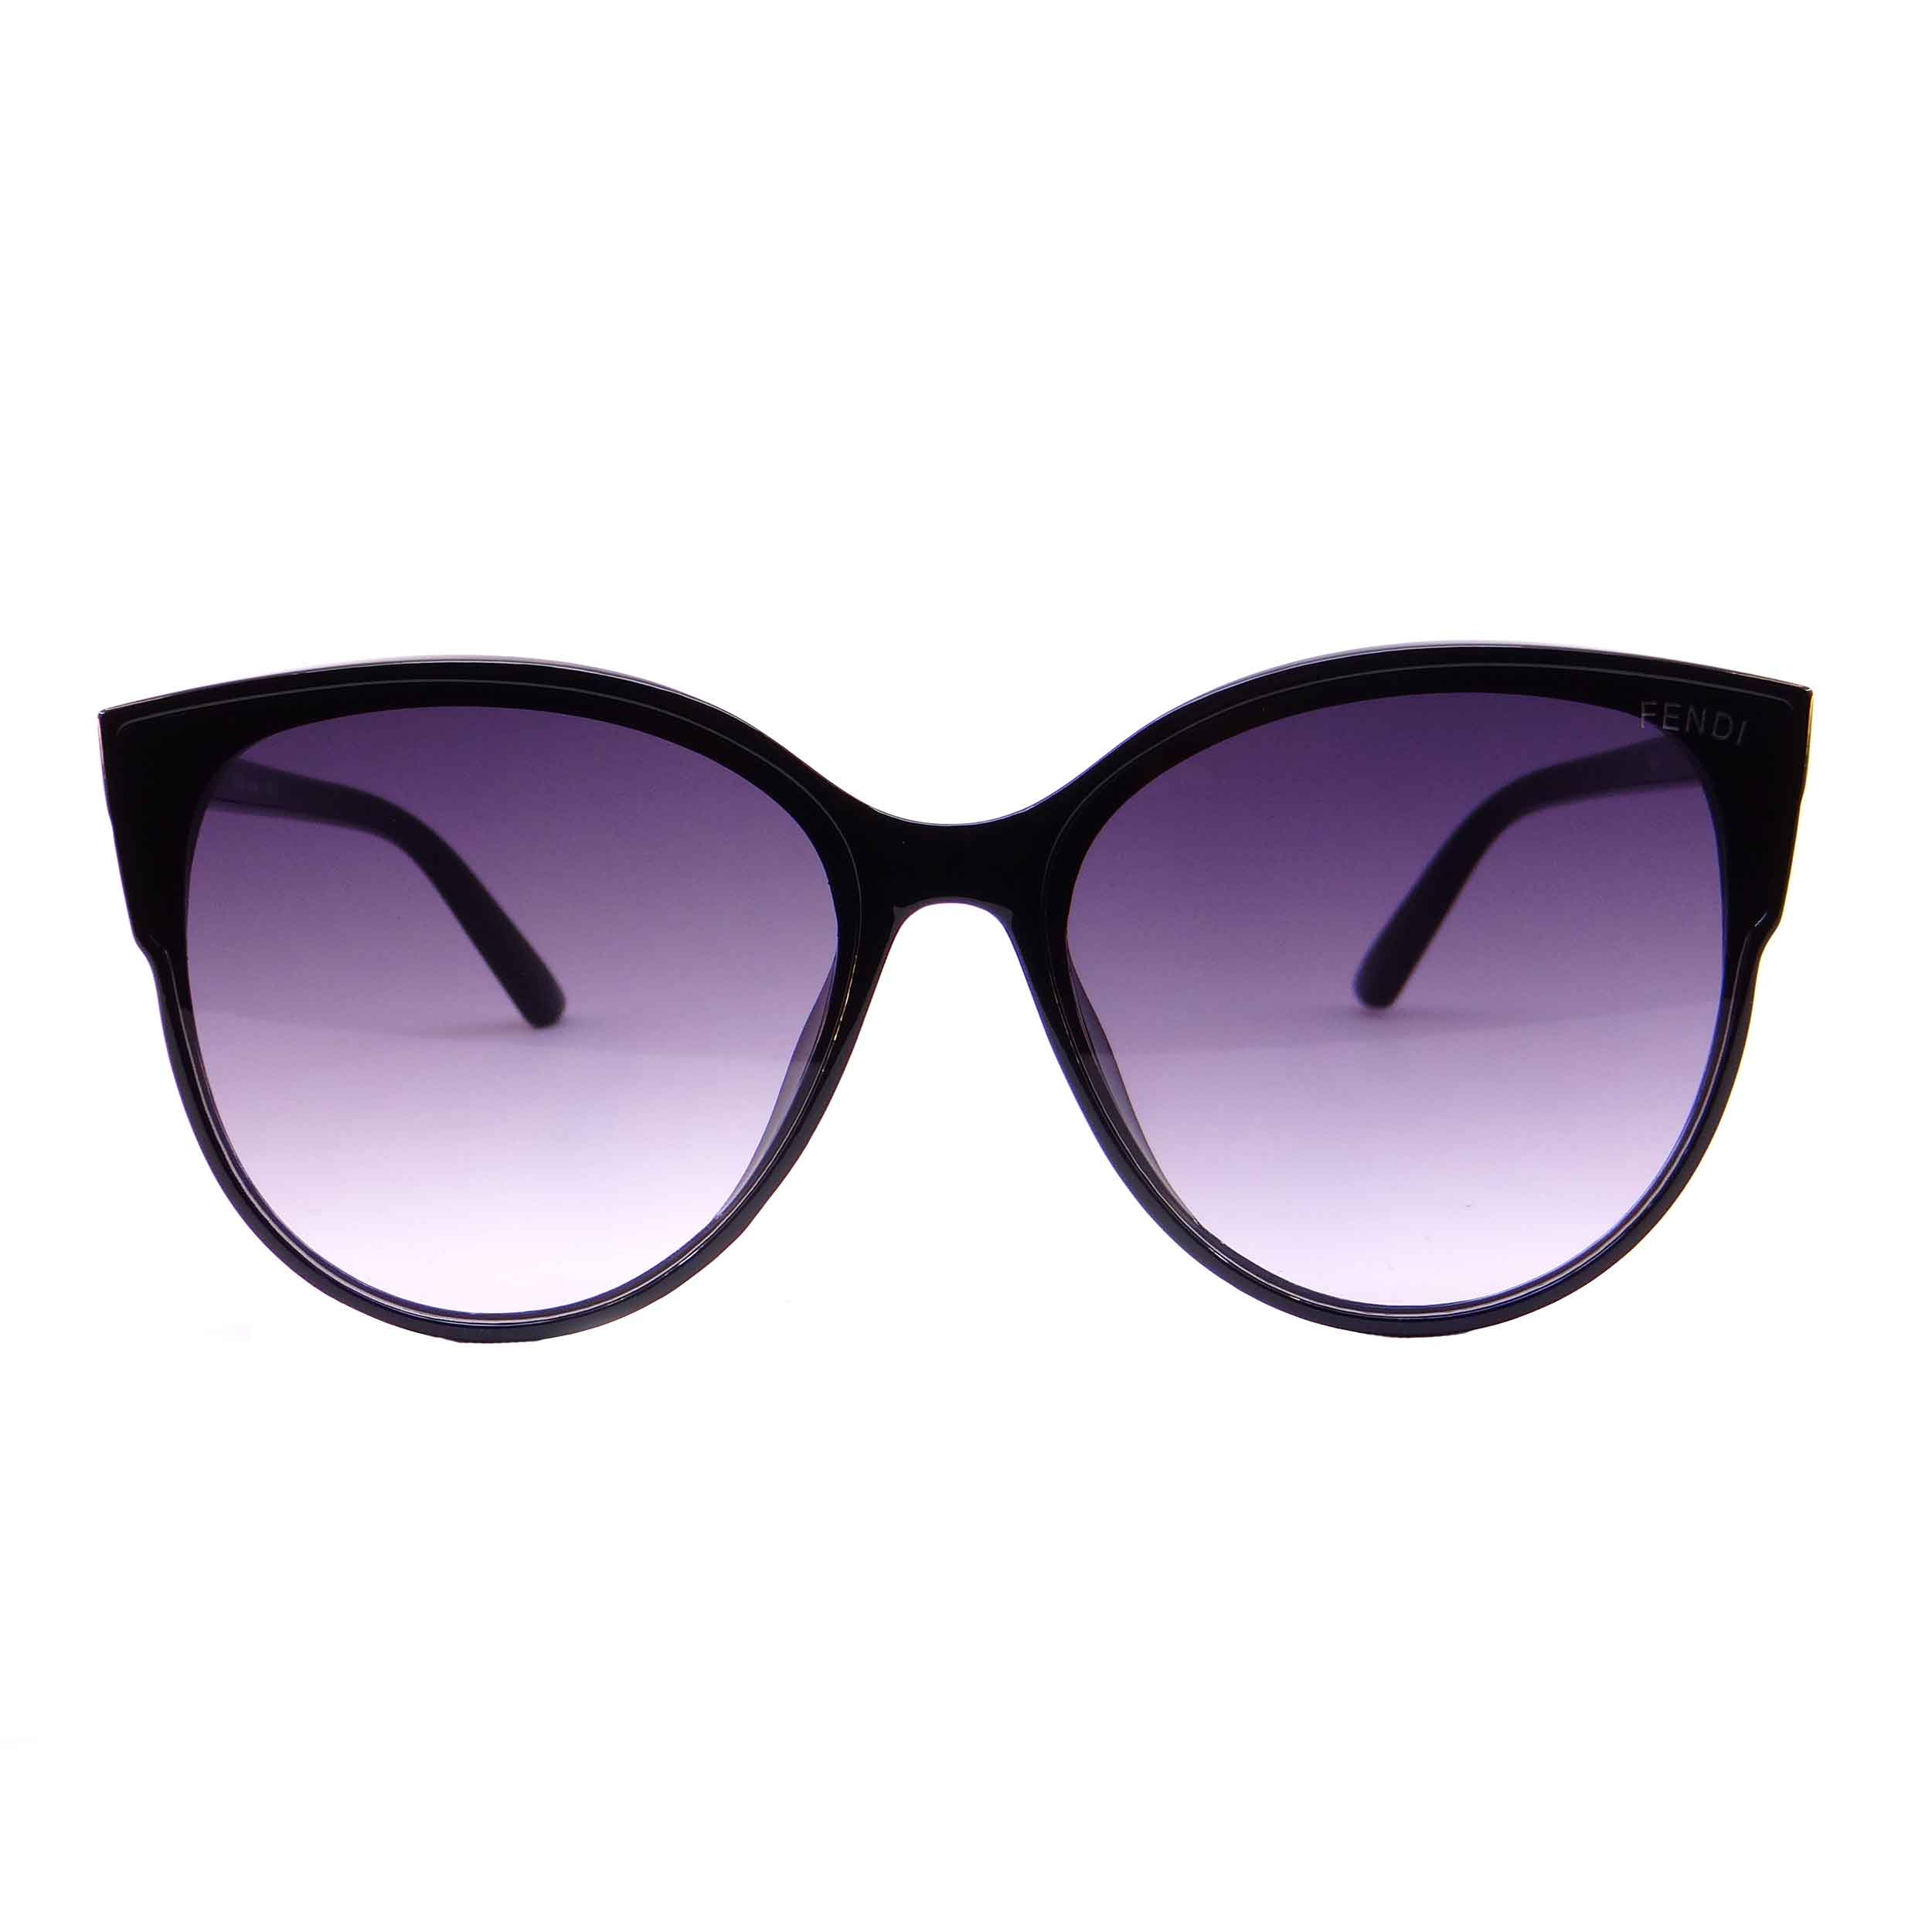 عینک آفتابی زنانه فندی مدل 9908 رنگ مشکی